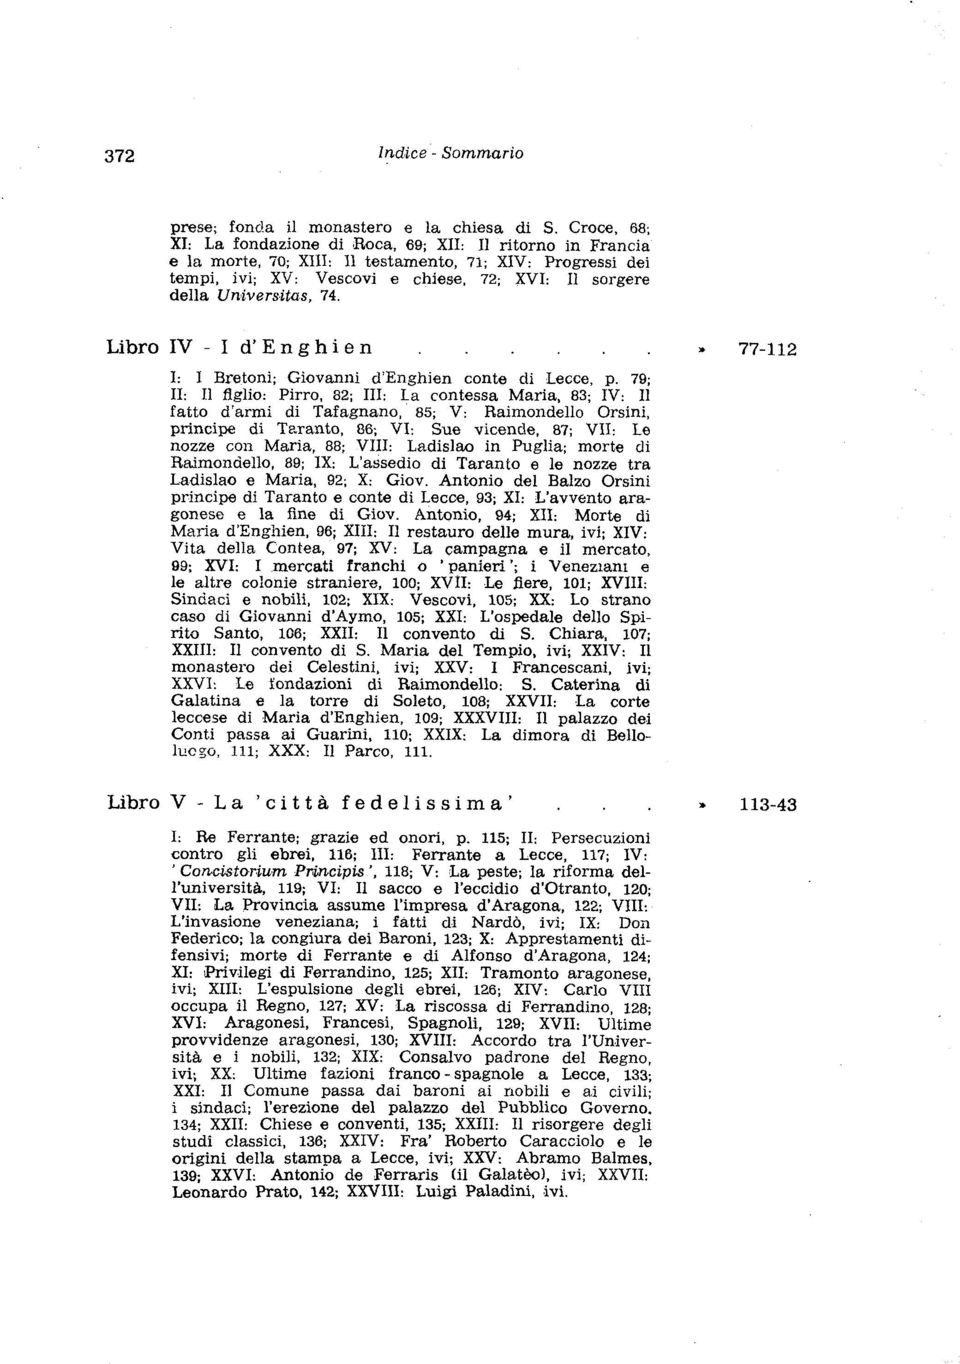 Universitas, 74. Libro IV - I d'enghien y 77-112 I: I Bretoni; Giovanni cl'engliien conte di Lecce, p.